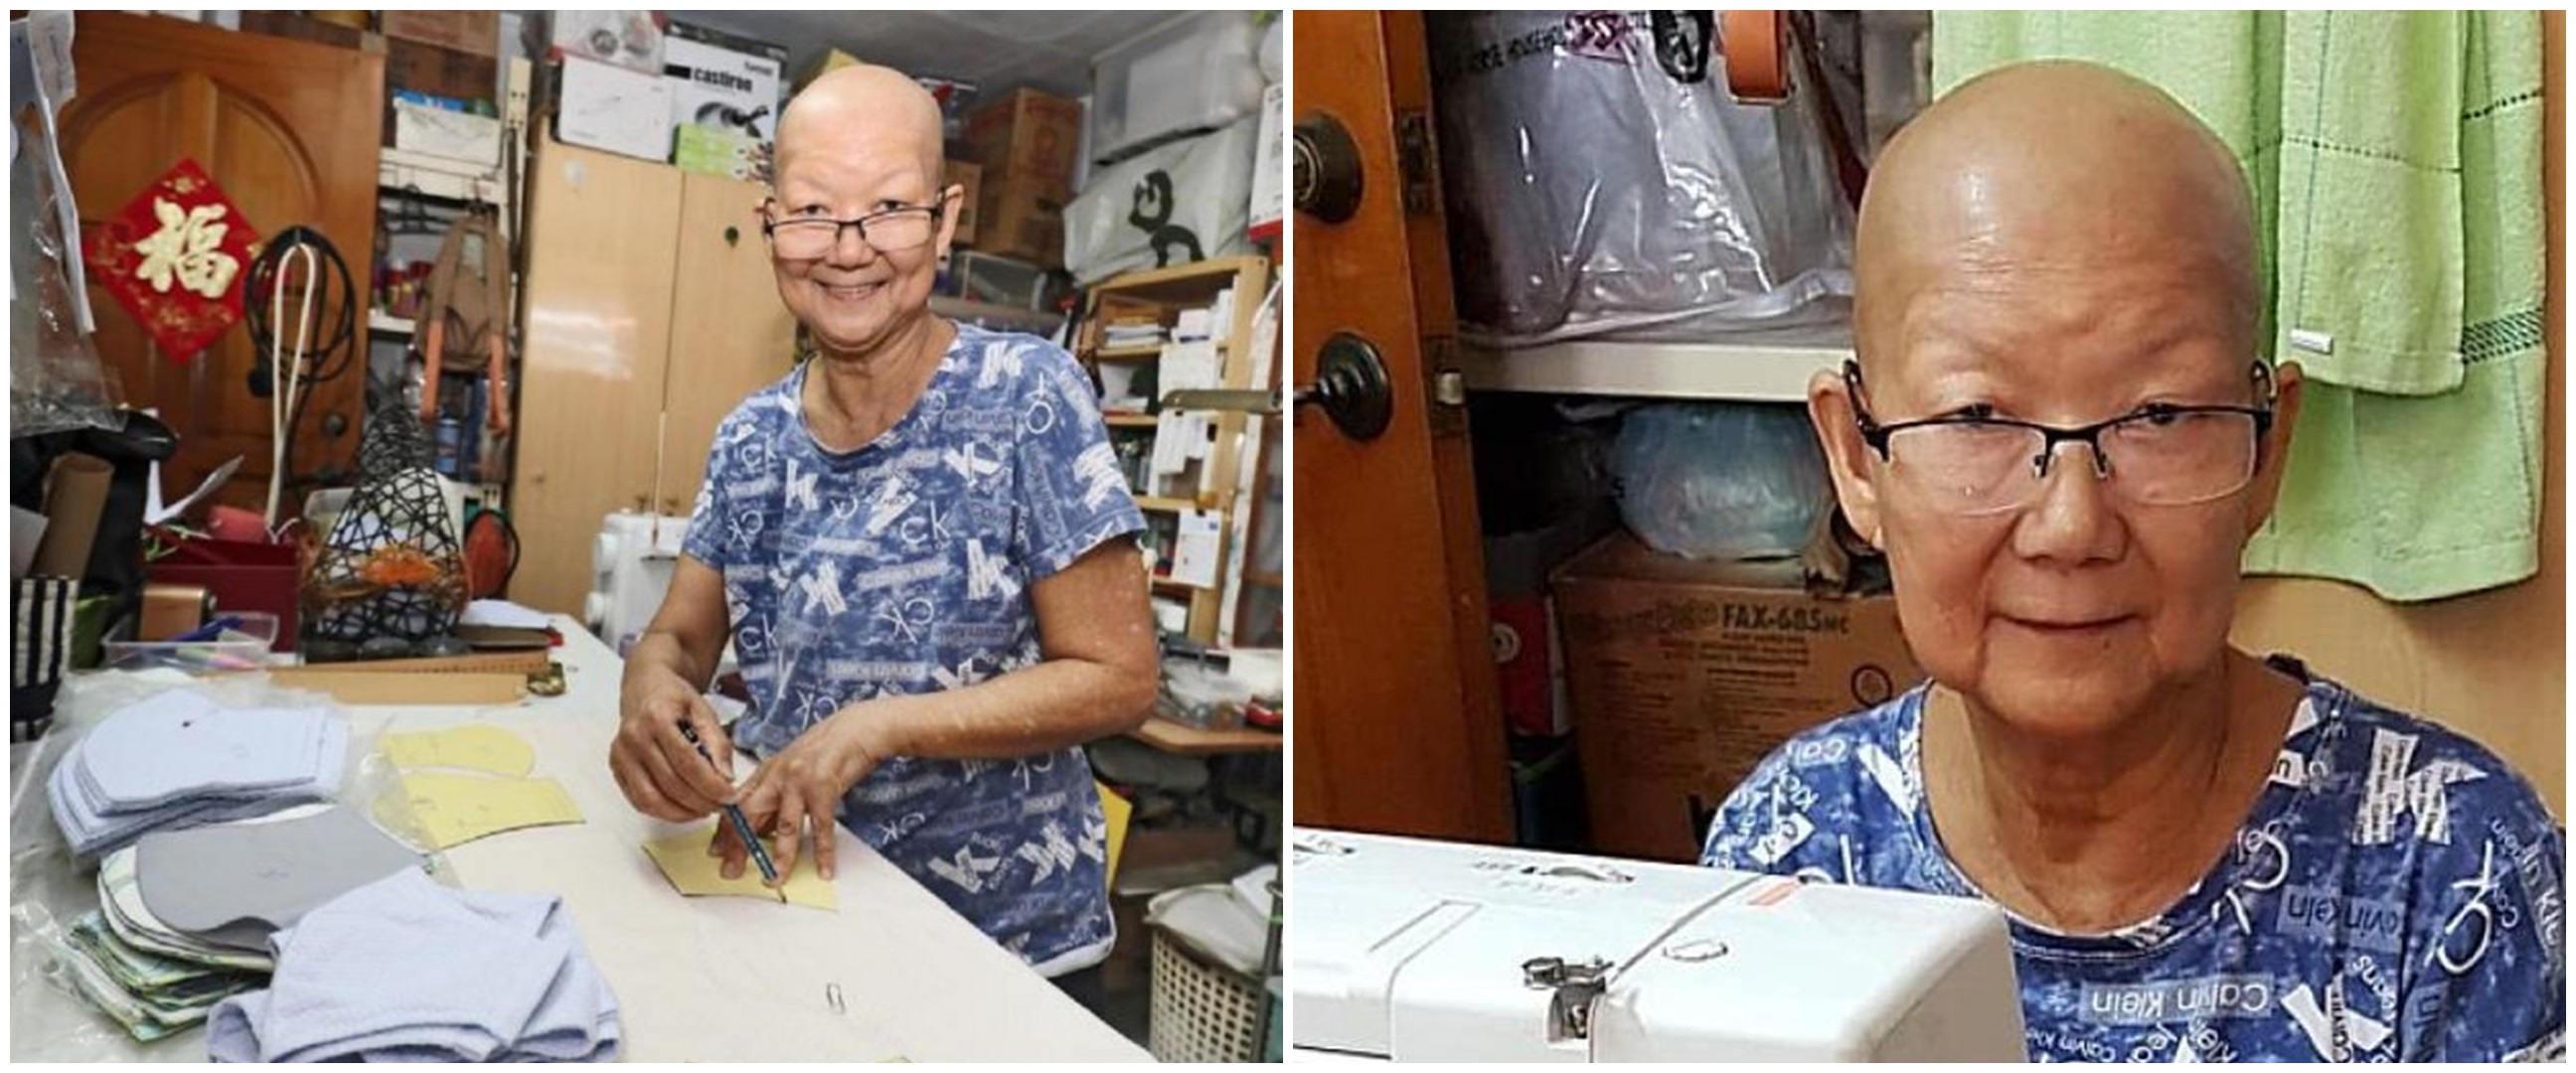 Persediaan menipis, nenek 71 tahun ikut jahit masker meski sakit